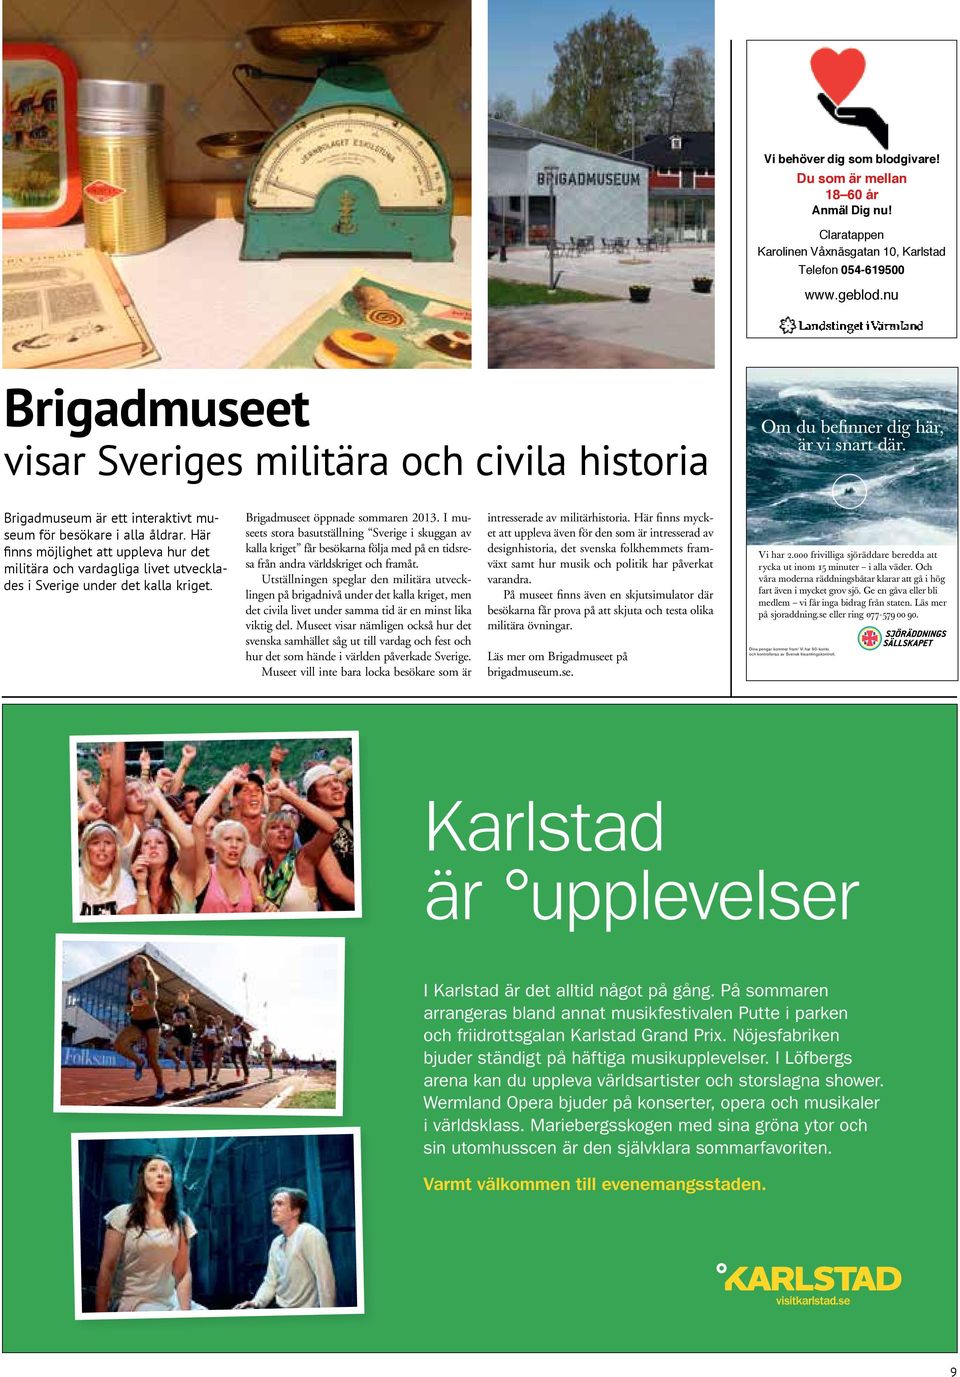 Brigadmuseum är ett interaktivt museum för besökare i alla åldrar. Här finns möjlighet att uppleva hur det militära och vardagliga livet utvecklades i Sverige under det kalla kriget.